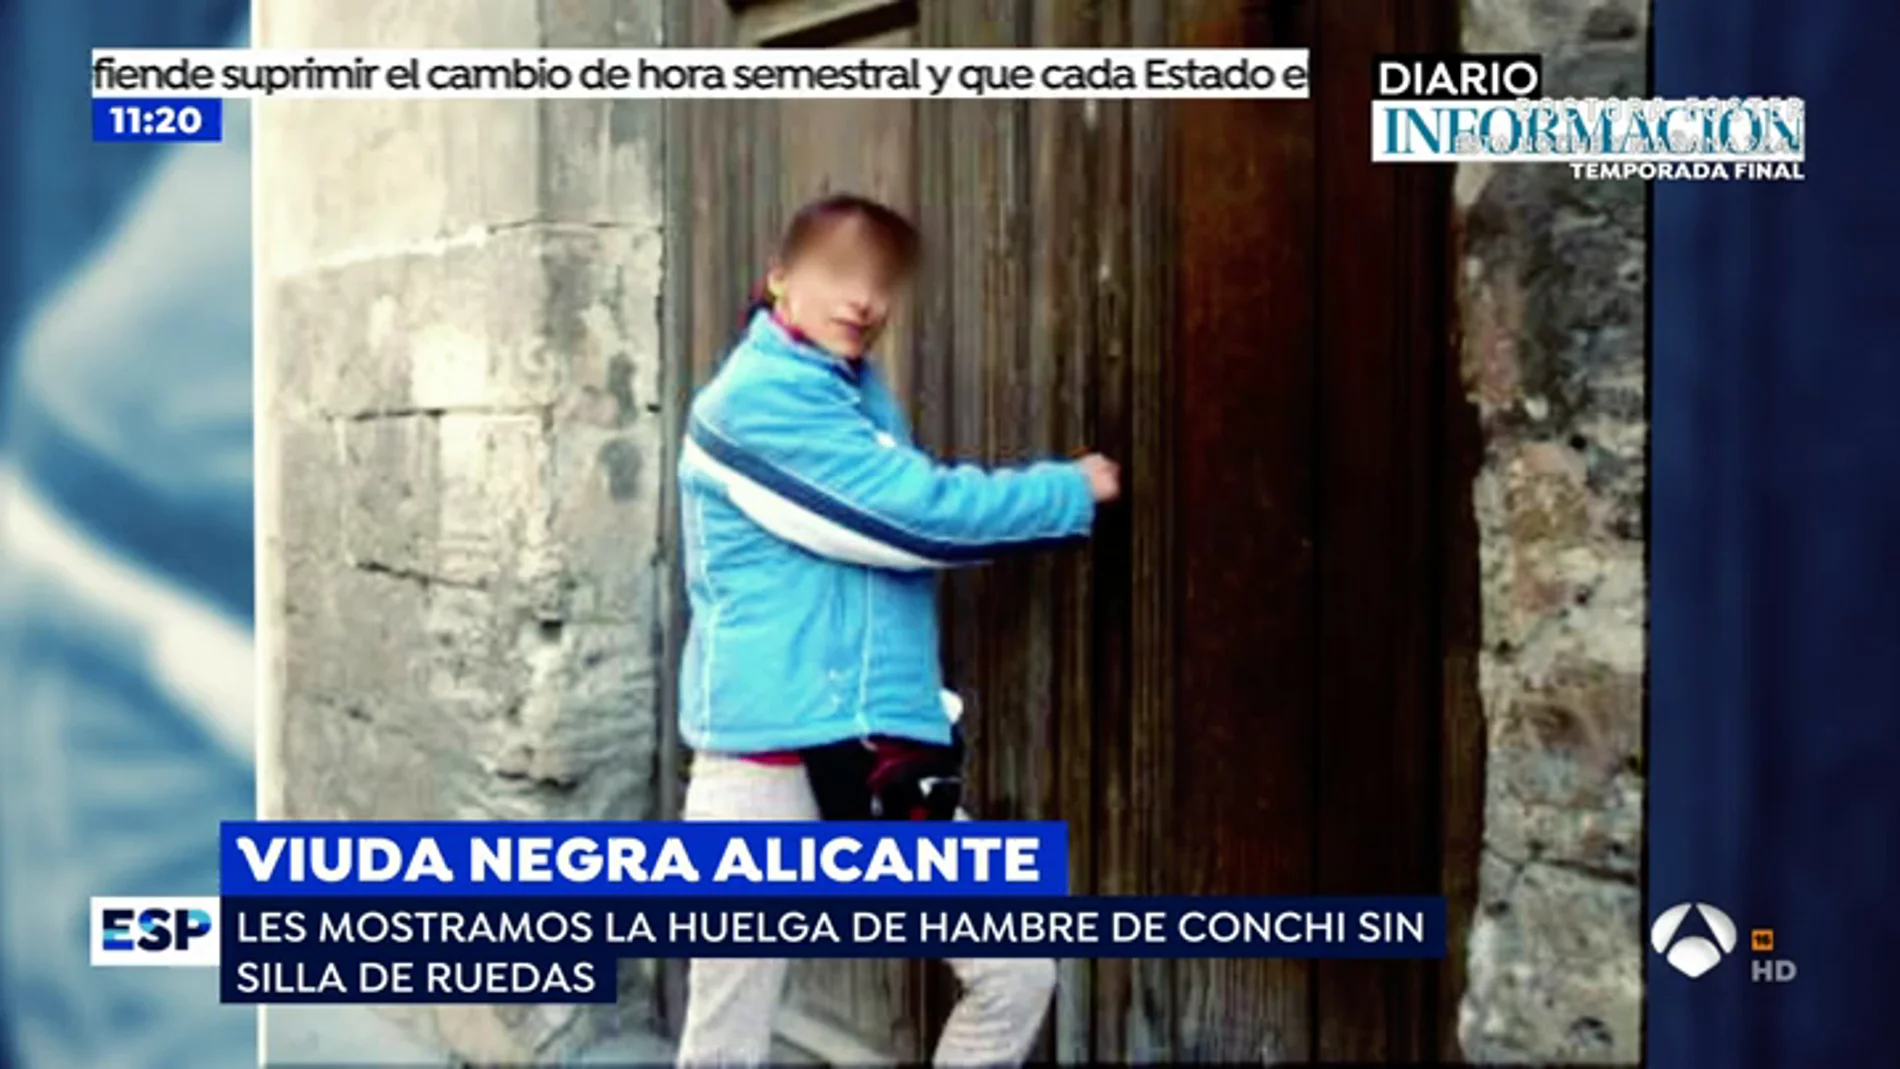 Las imágenes que demuestran que la viuda negra de Alicante no es minusválida